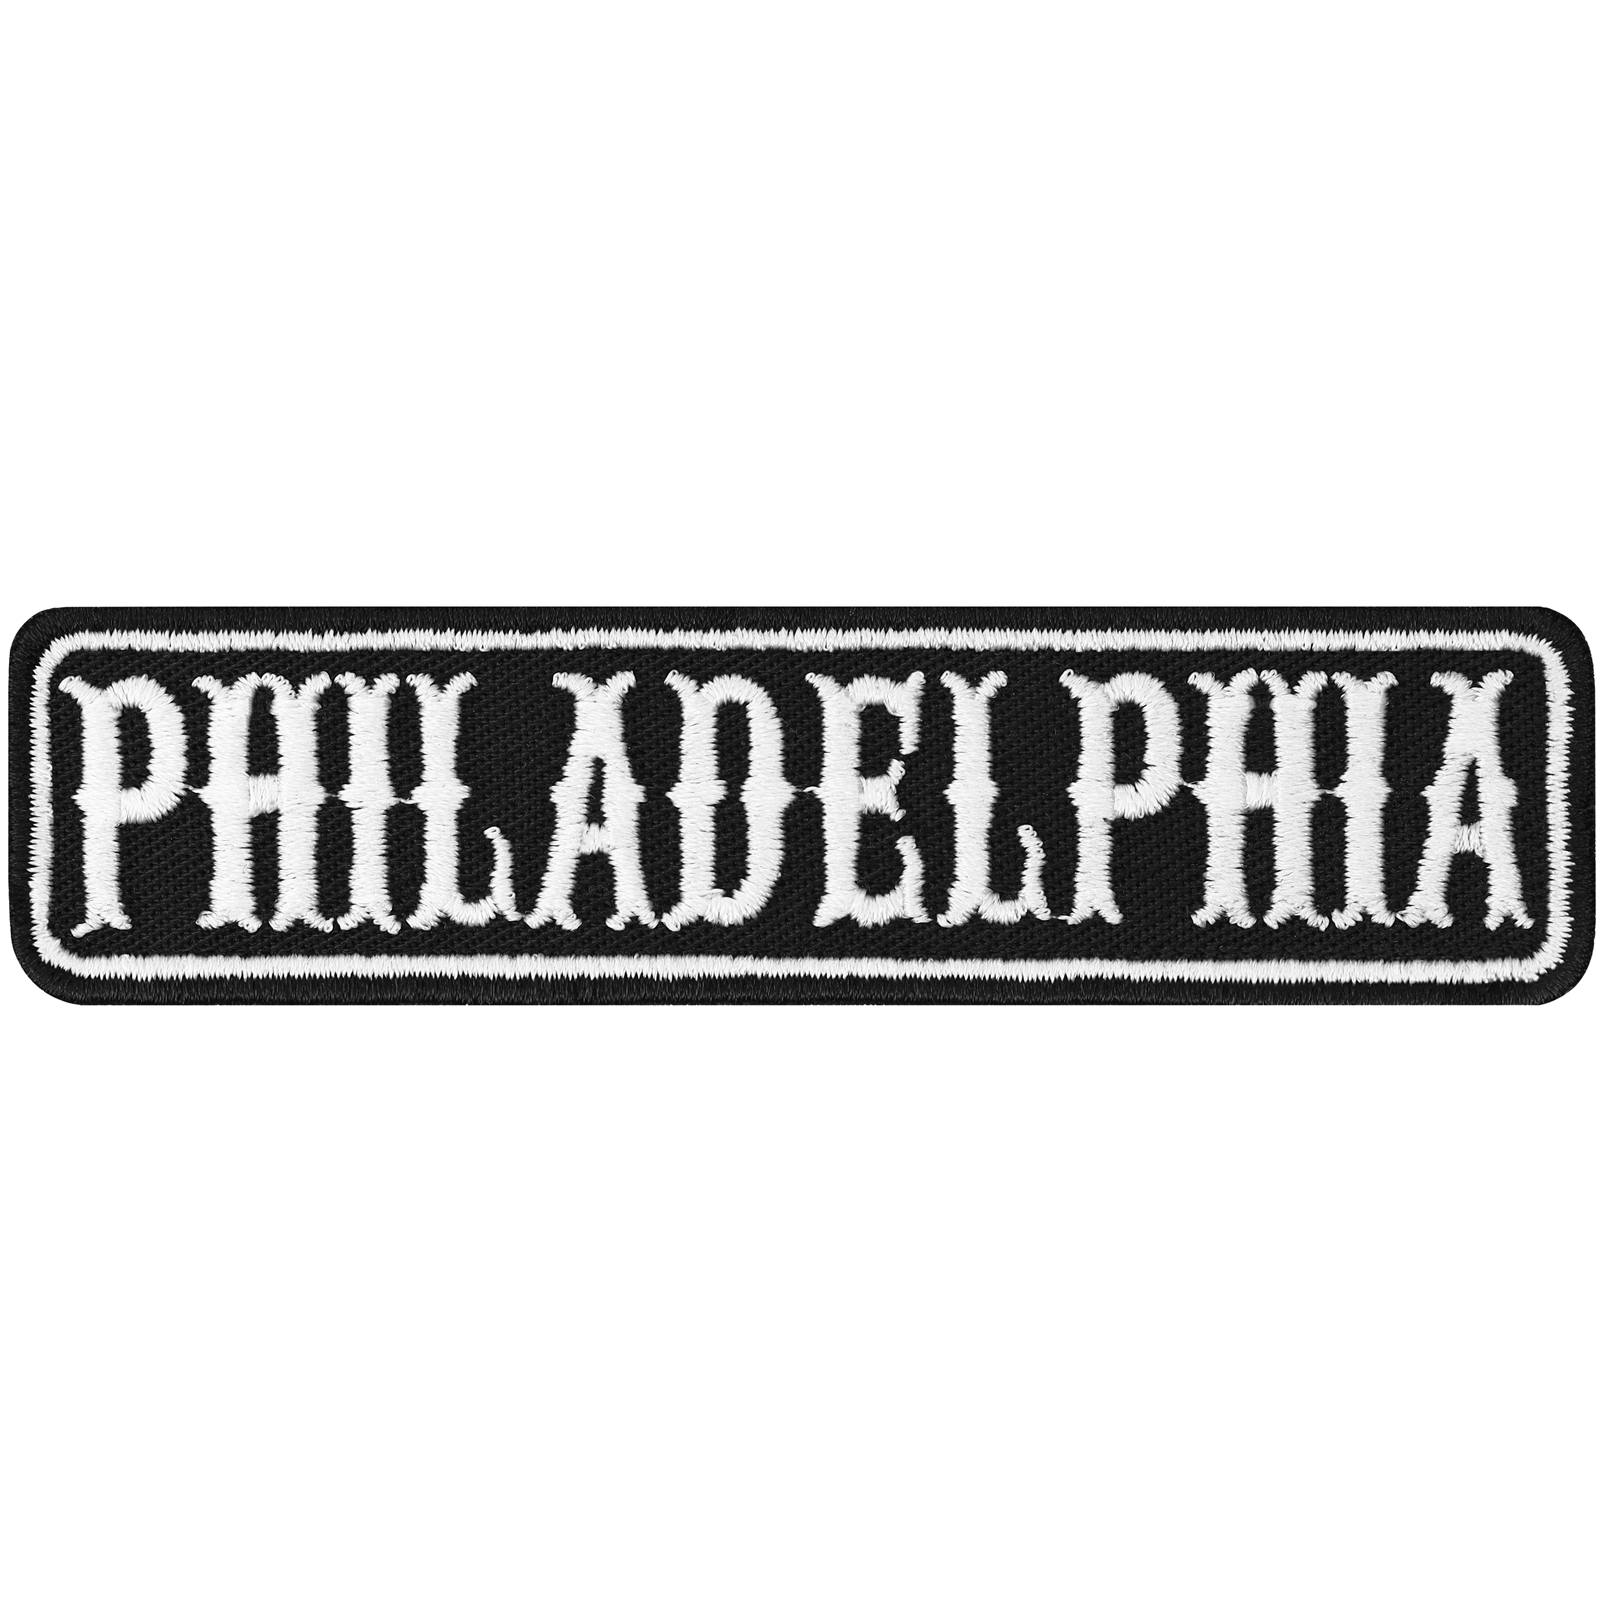 Philadelphia - Patch